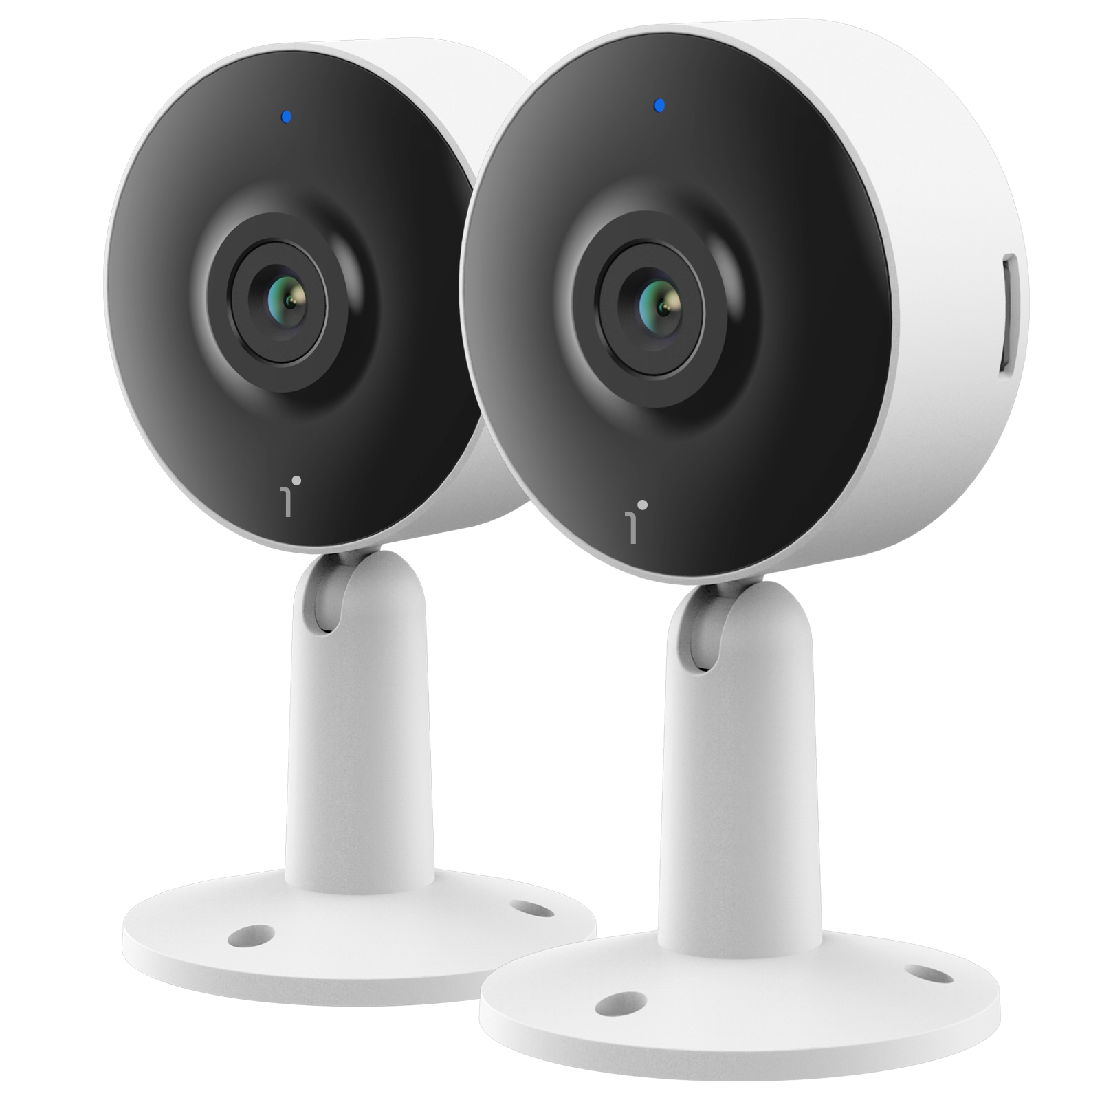 Arenti IN1 Security Camera - Wi-Fi Indoor Camera Full HD